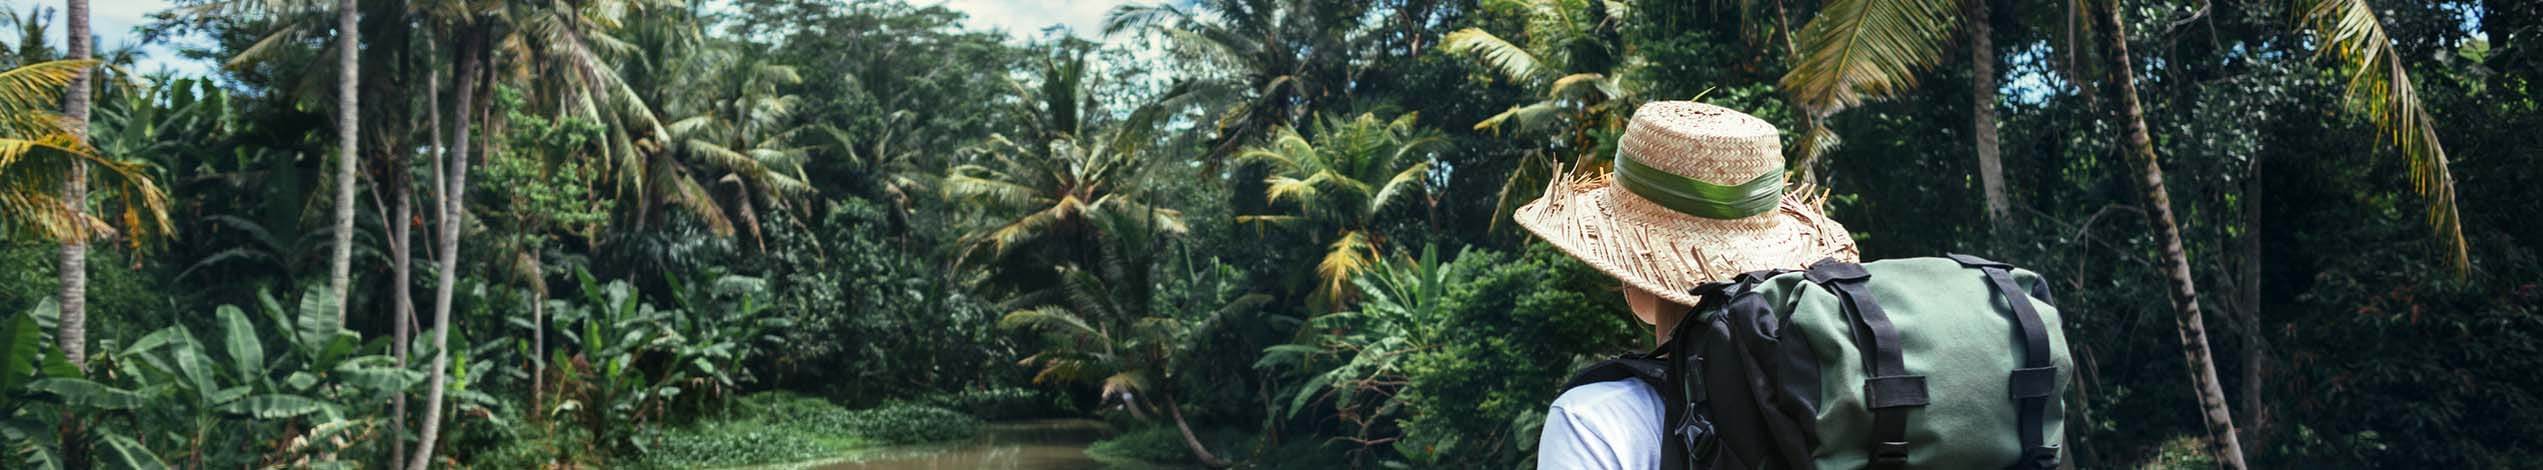 Junglen i Sarawak